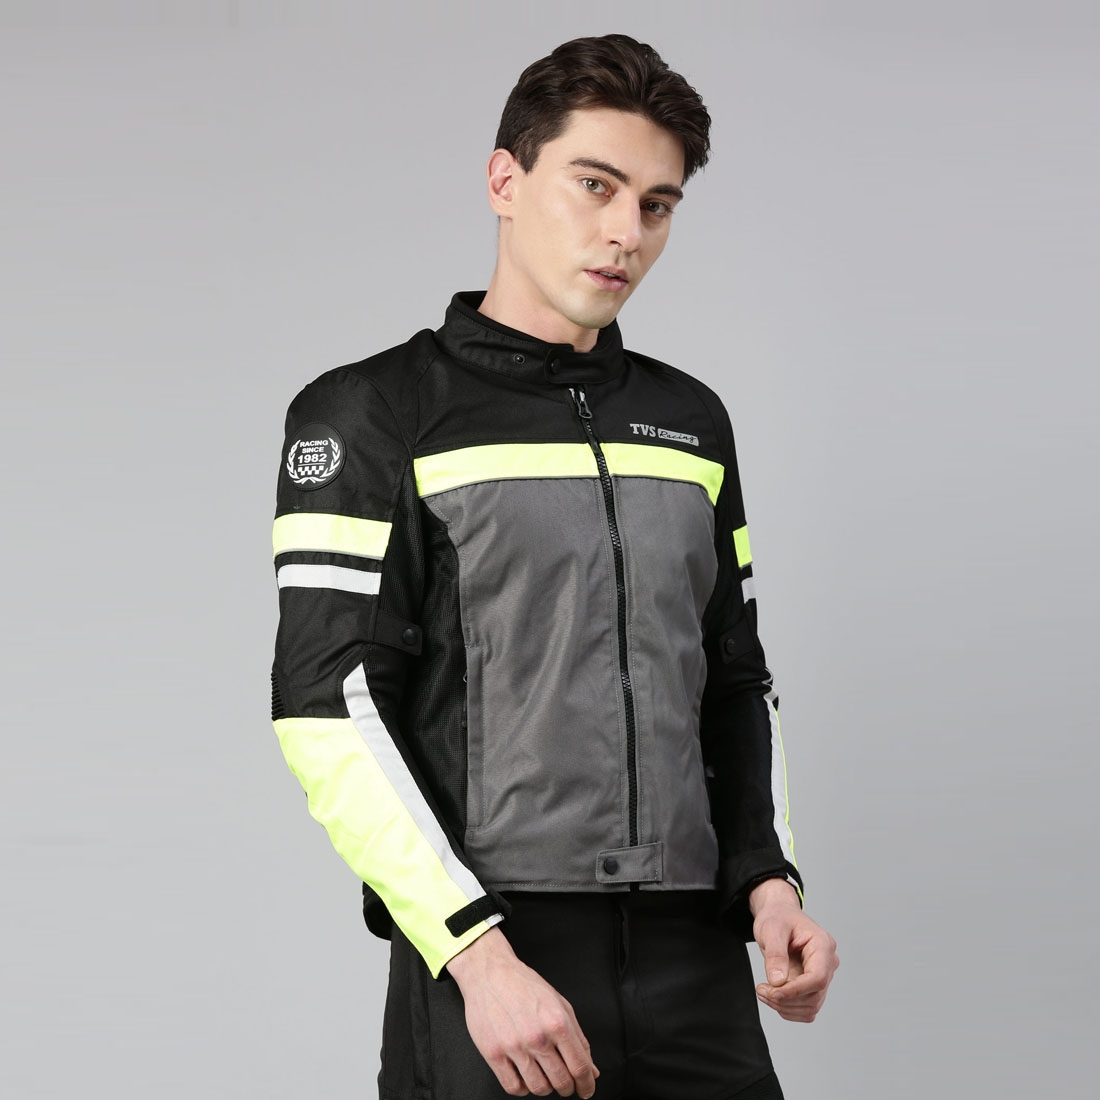 TVS Racing Asphalt Riding Jacket for Men ( Basic)- High Abrasion 600D  Polyester, – Essential Bike Jacket for Bikers (Grey) Online at Best Prices  | TVS Motor Company